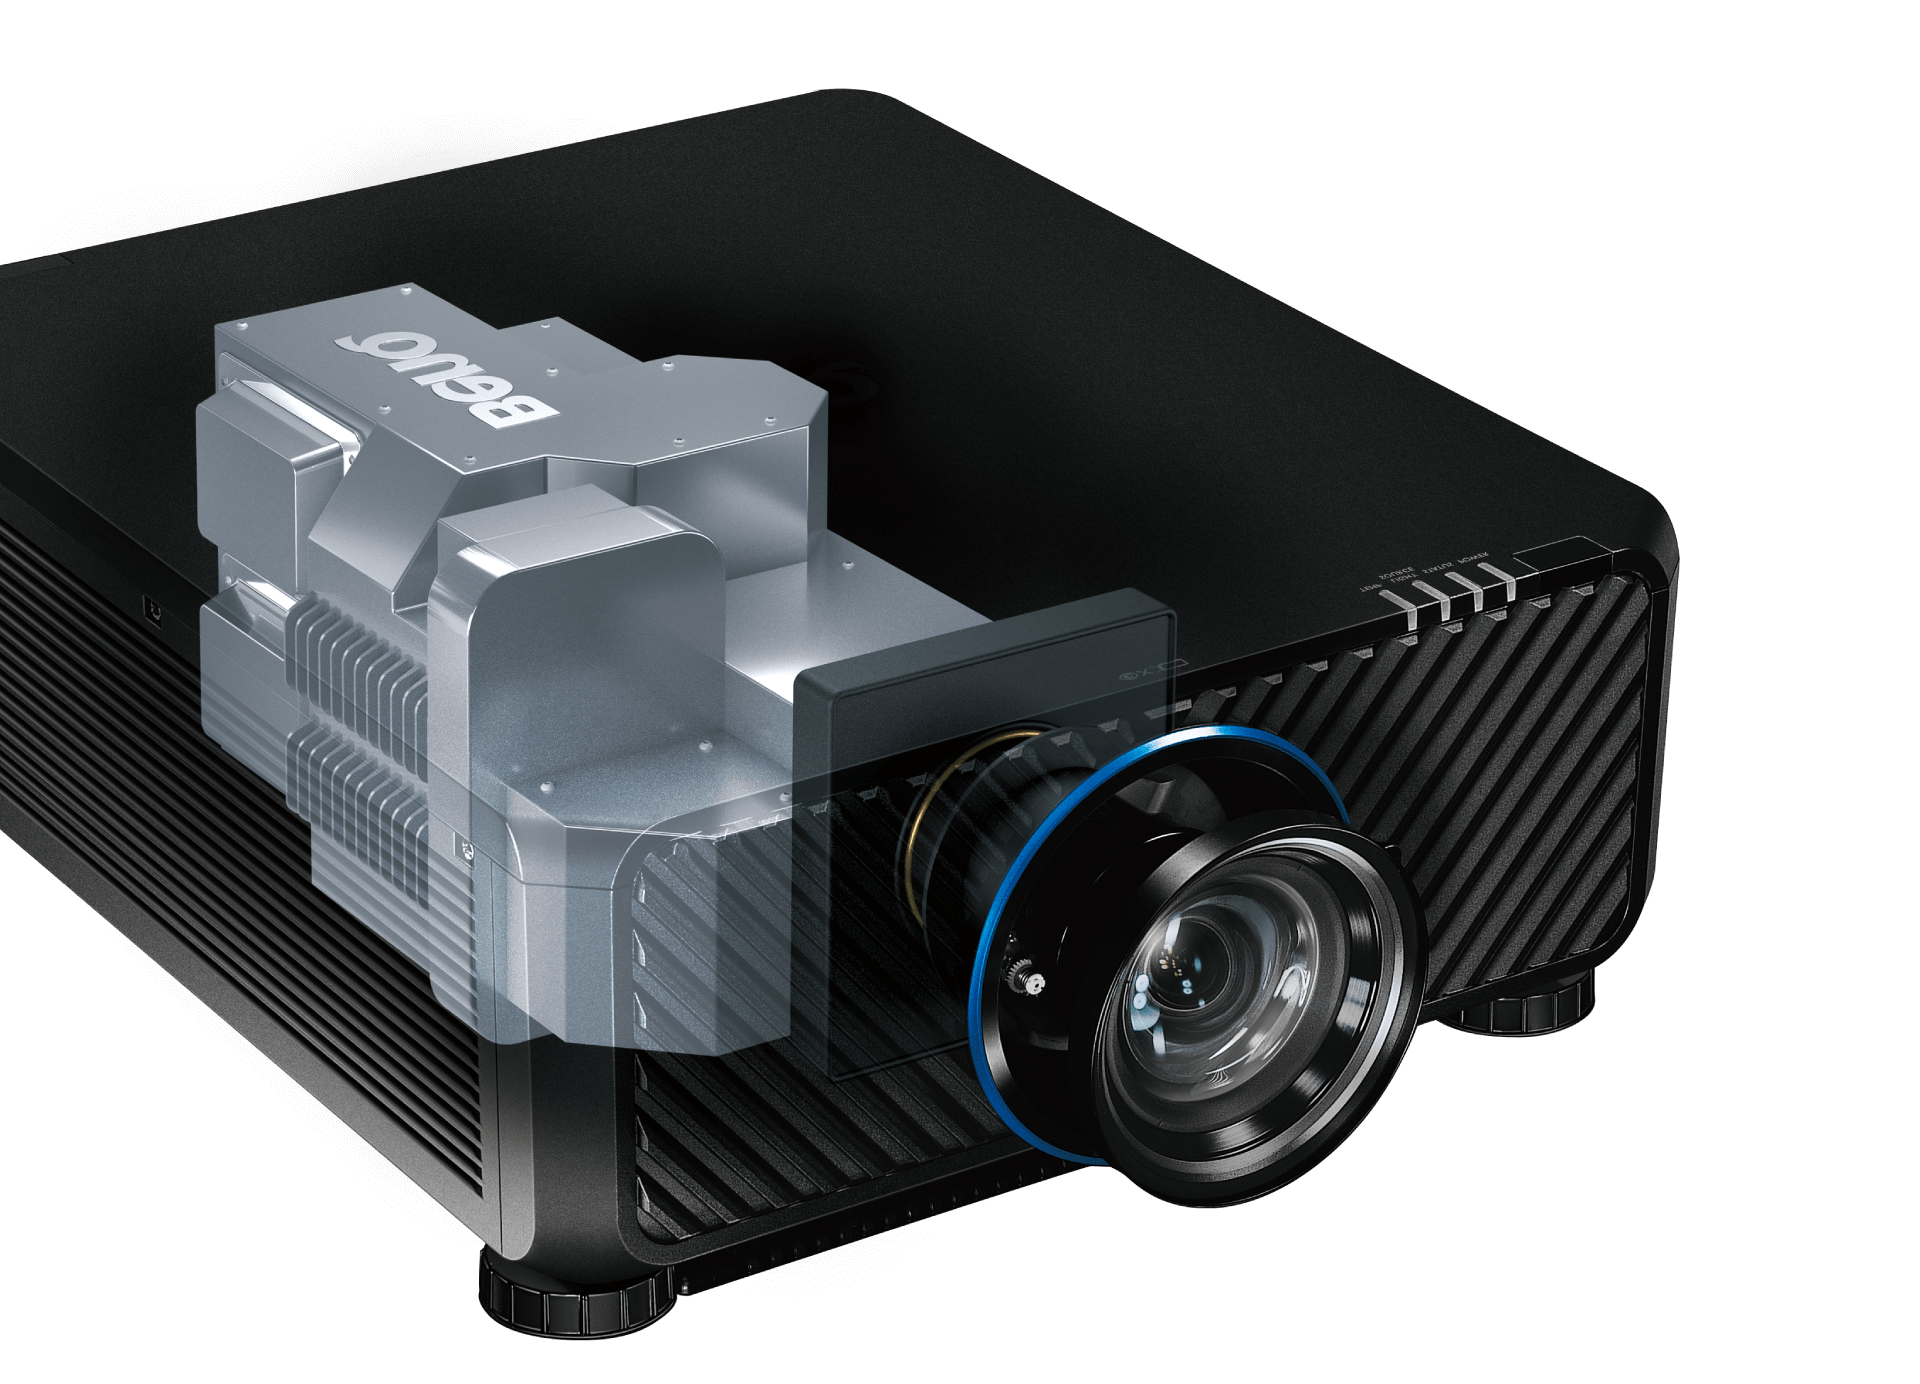 Videoproiettore per grandi ambienti BenQ LU9800 con certificazione IP5X di resistenza alla polvere superiore per condizioni difficili